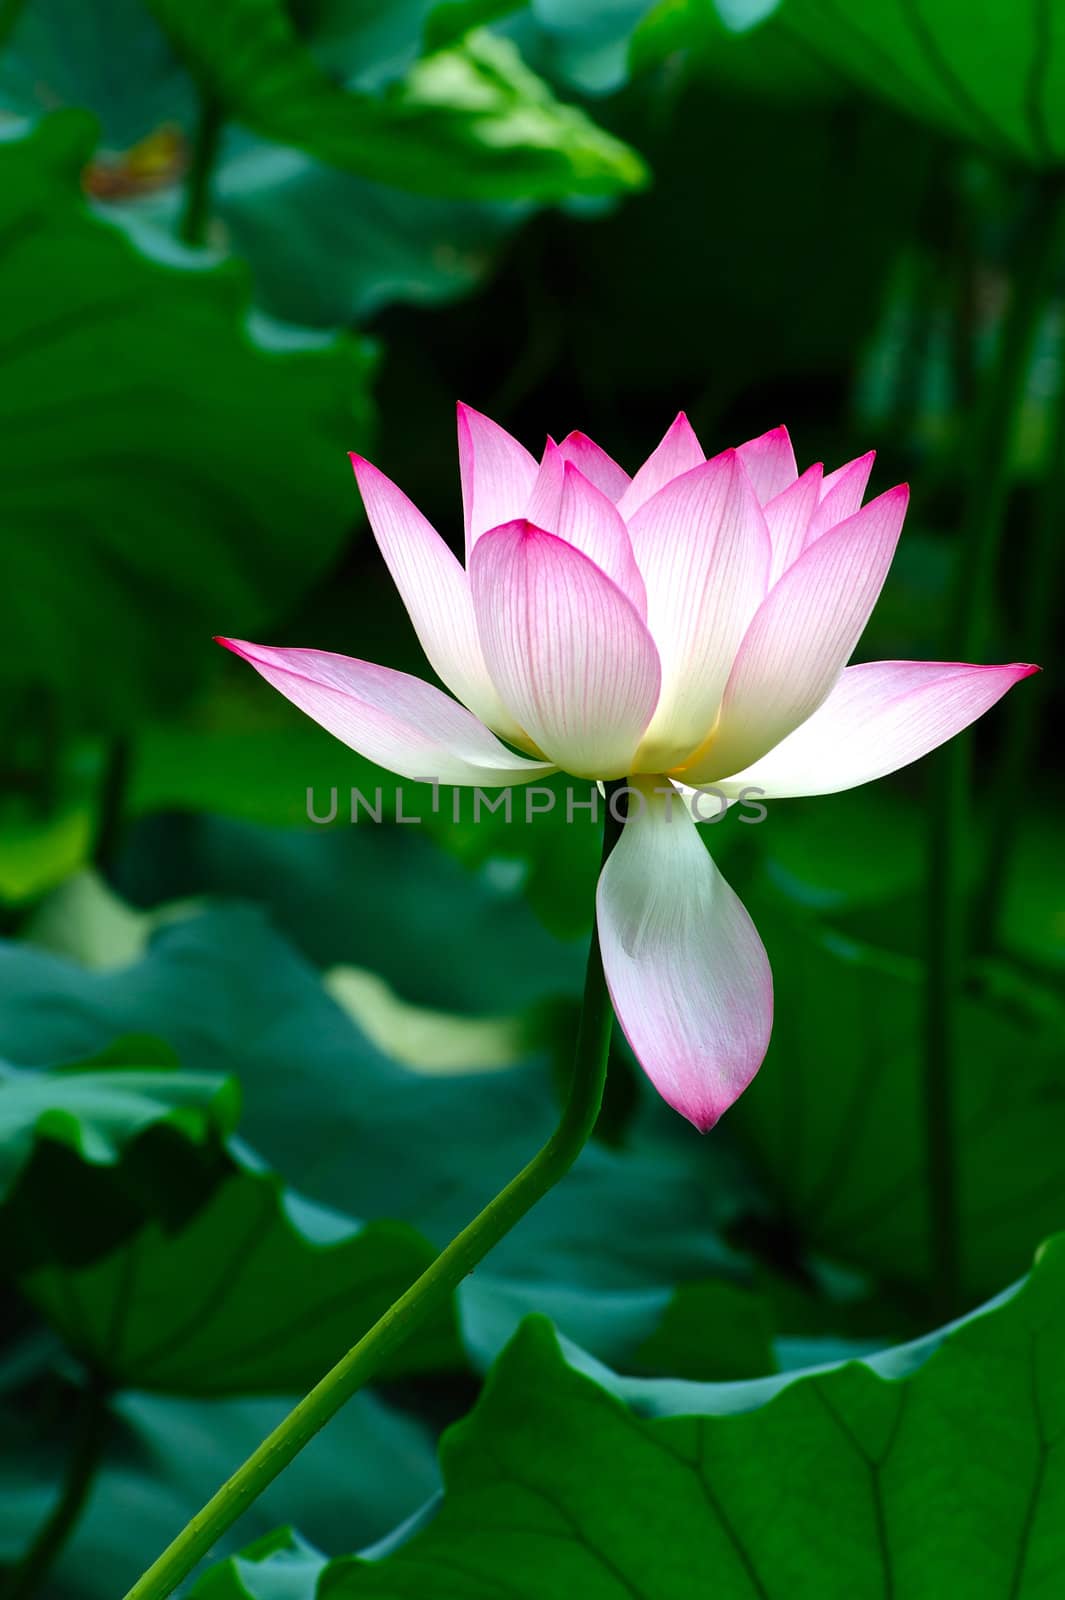 Lotus flower blooming in the pool